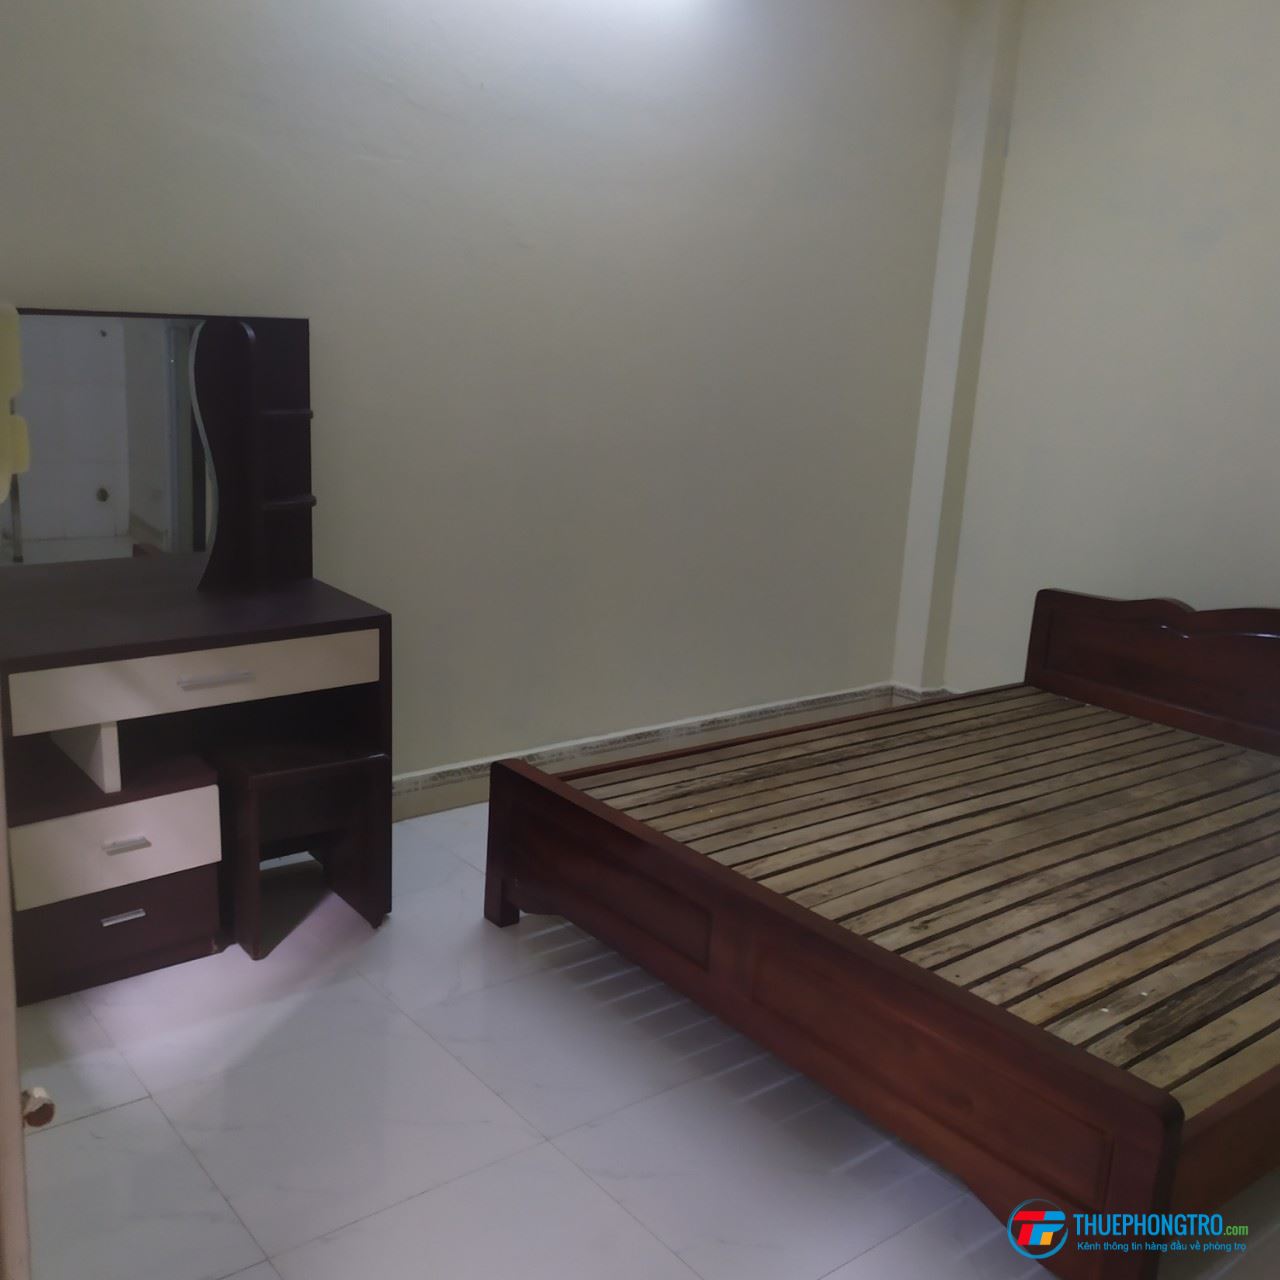 Phòng trọ mới quận Thanh Xuân có đầy đủ tiện nghi, giường, bộ bàn, chỗ nấu ăn, máy nóng lạnh